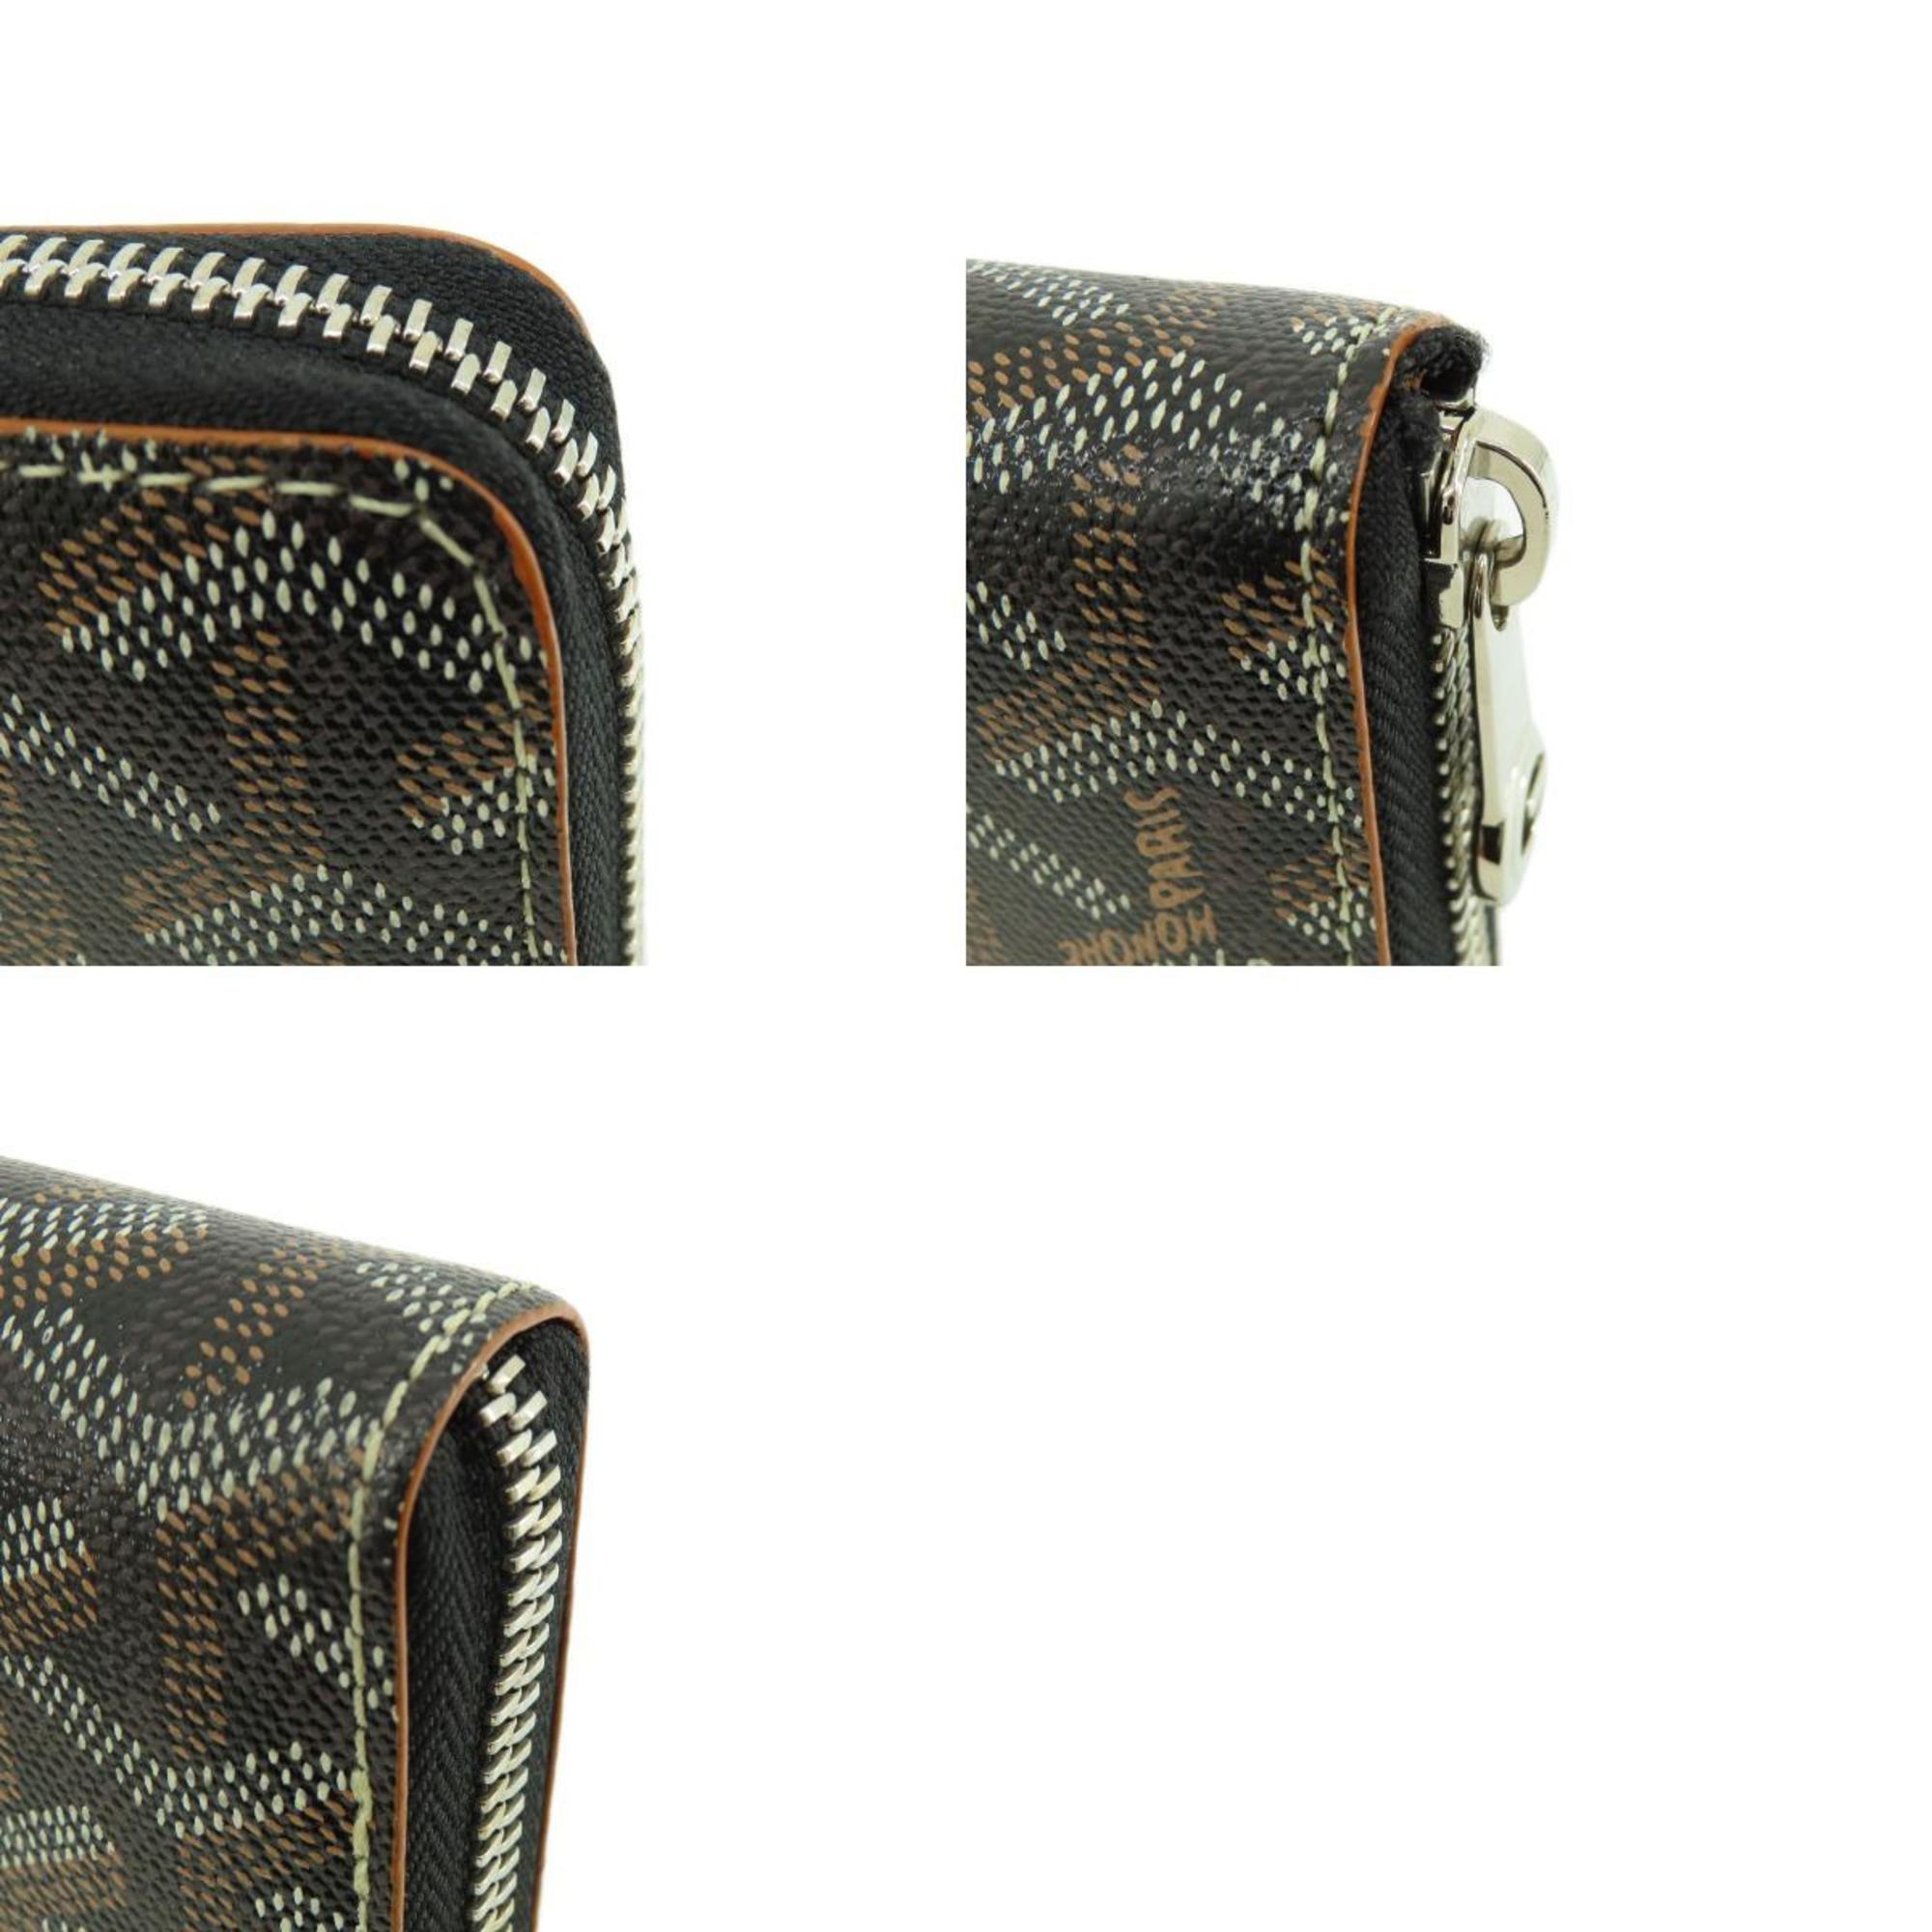 Goyard Zip GM Herringbone Pattern Long Wallet Coated Canvas Leather Women's